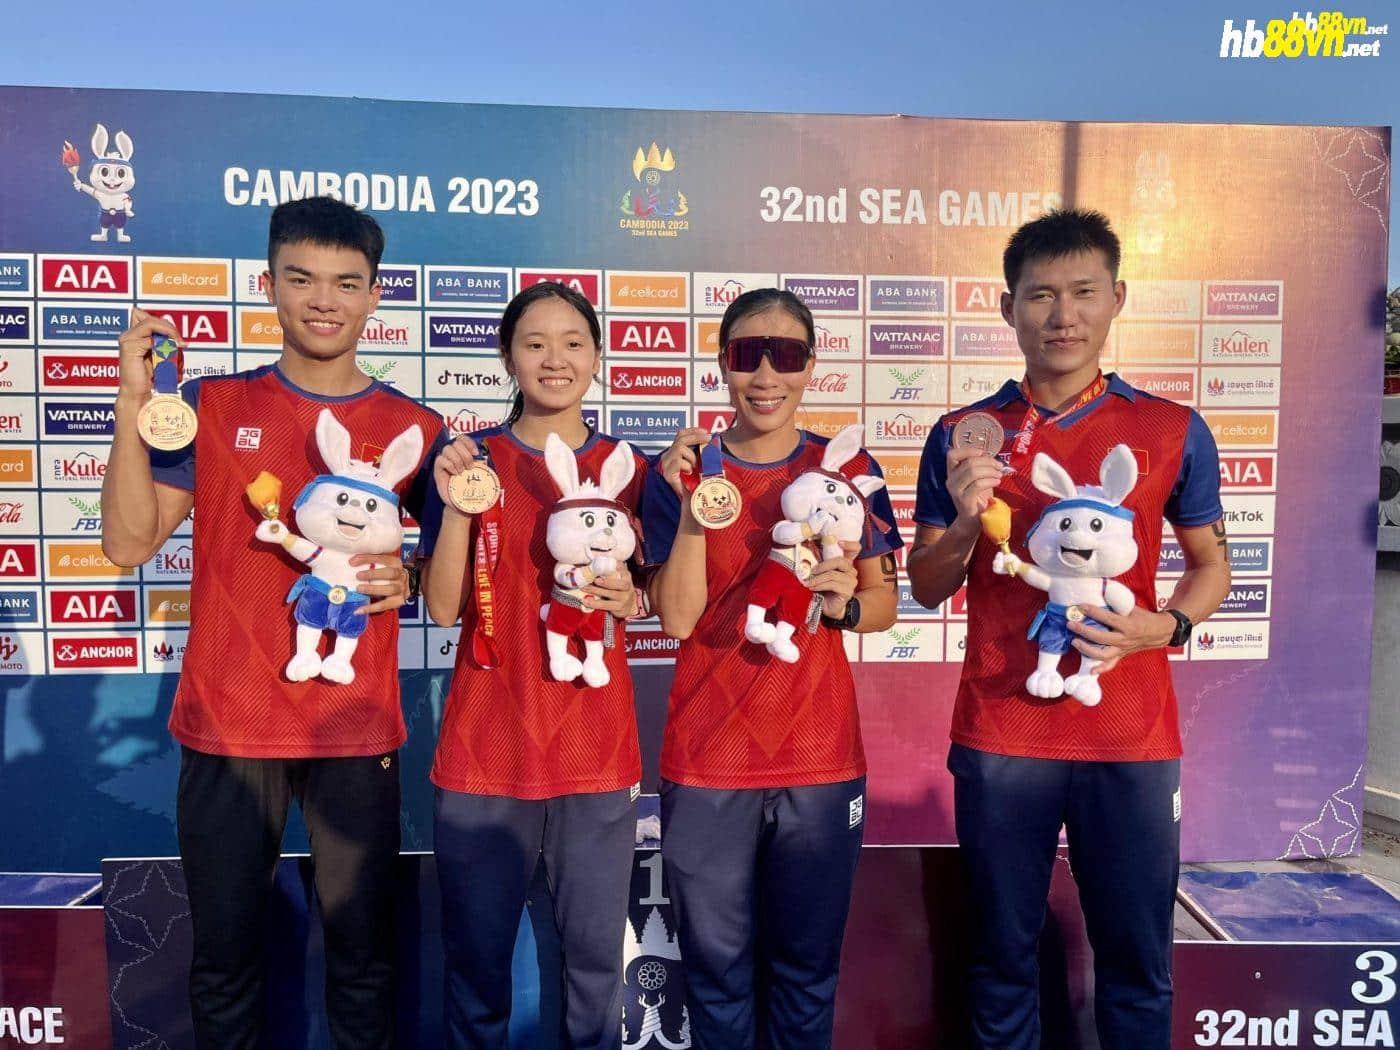 Kim Tuyến (đeo kính), Đình Duân (ngoài cùng bên phải) chụp ảnh cùng huy chương SEA Games 32. Ảnh: nhân vật cung cấp